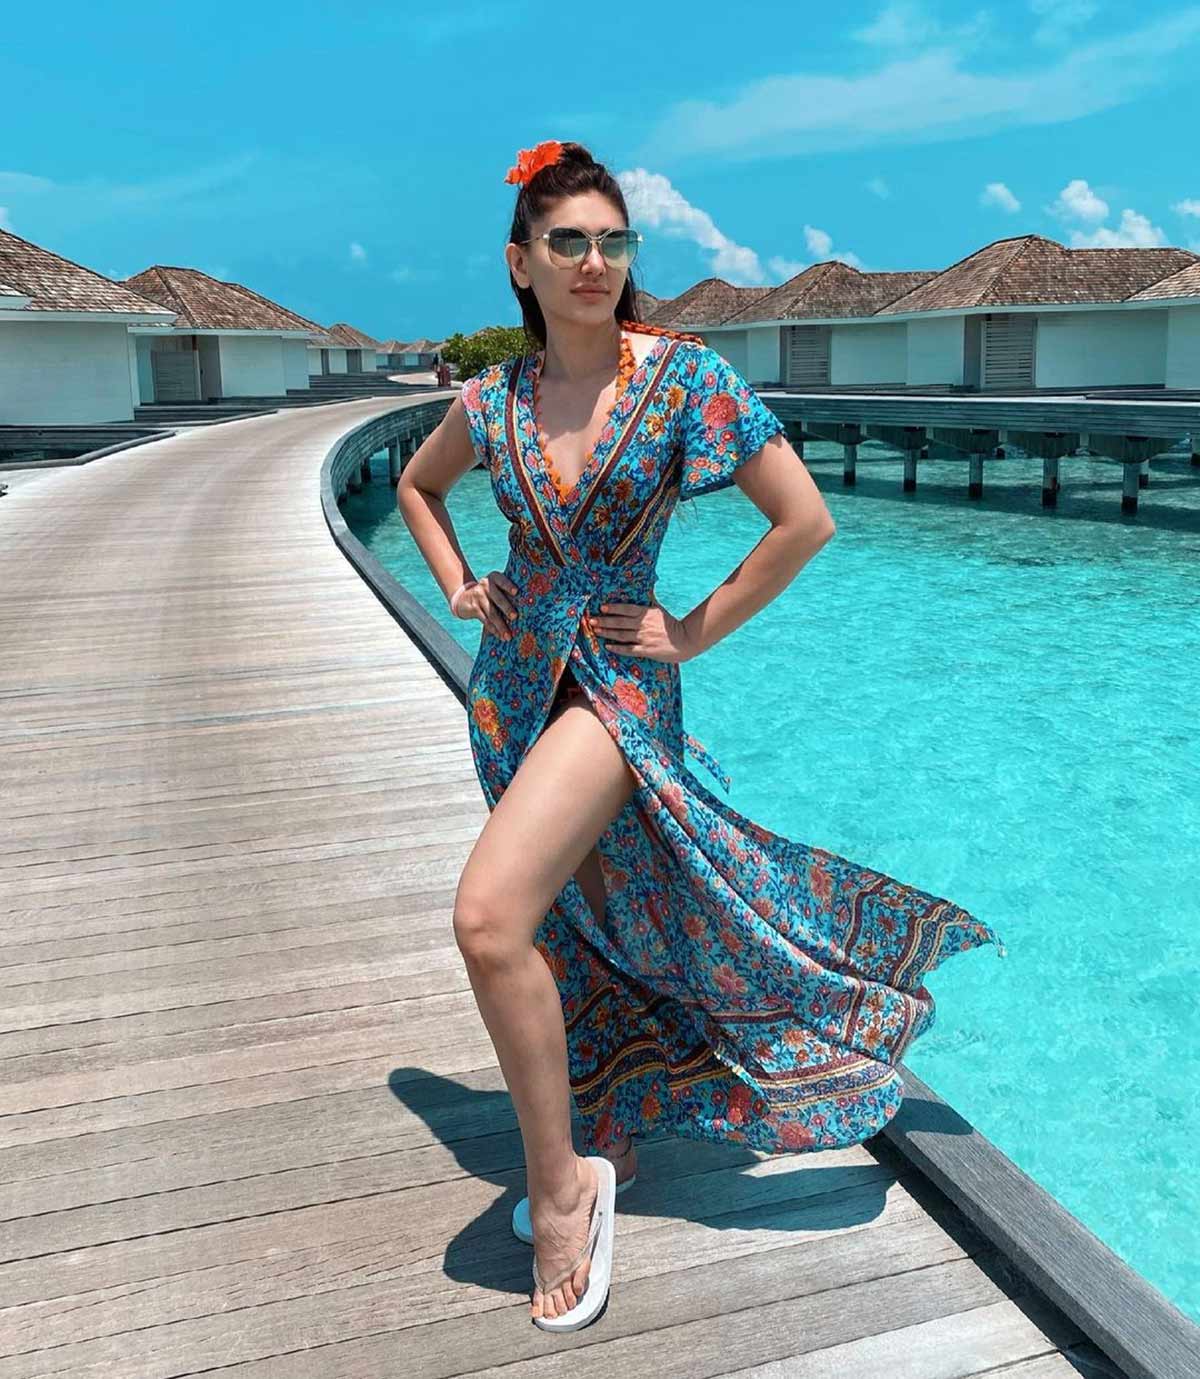 Kaanta Laga girl goes to Maldives! - Rediff.com movies